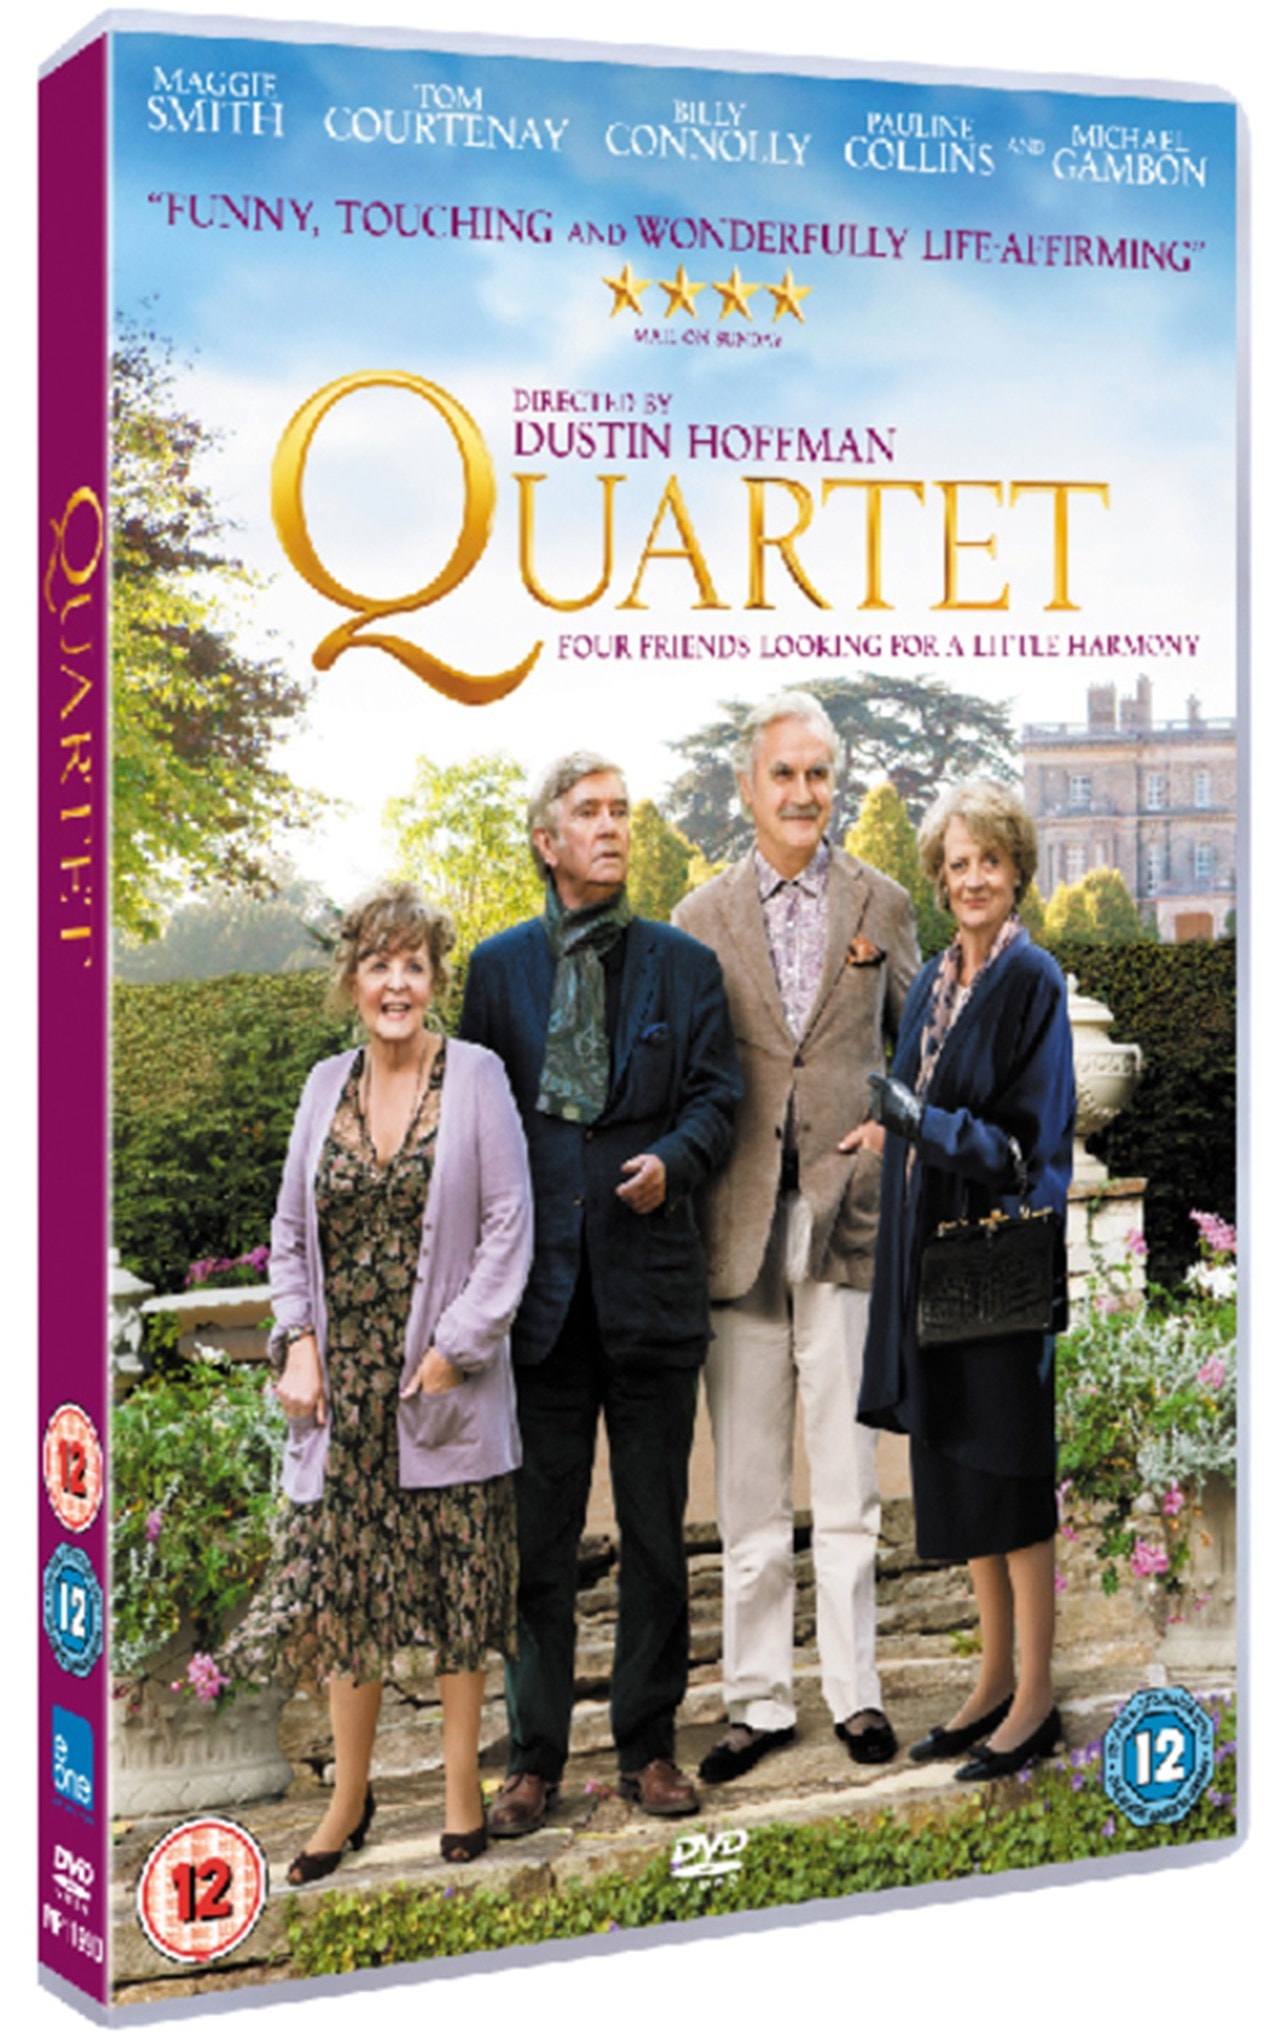 Quartet | DVD | Free shipping over £20 | HMV Store